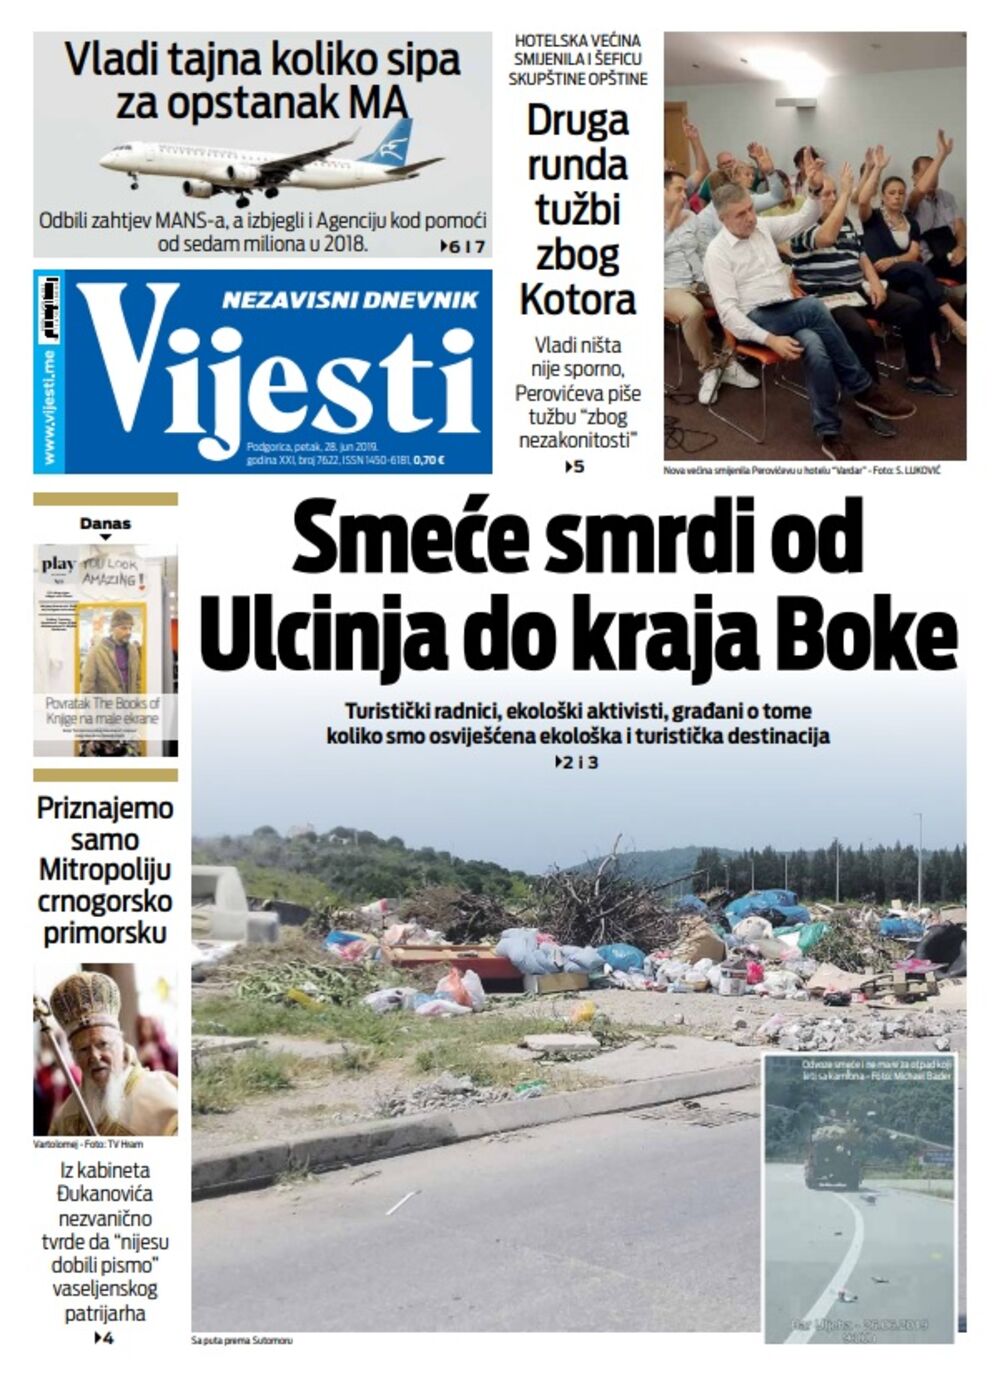 Naslovna strana "Vijesti" 28.6., Foto: Vijesti